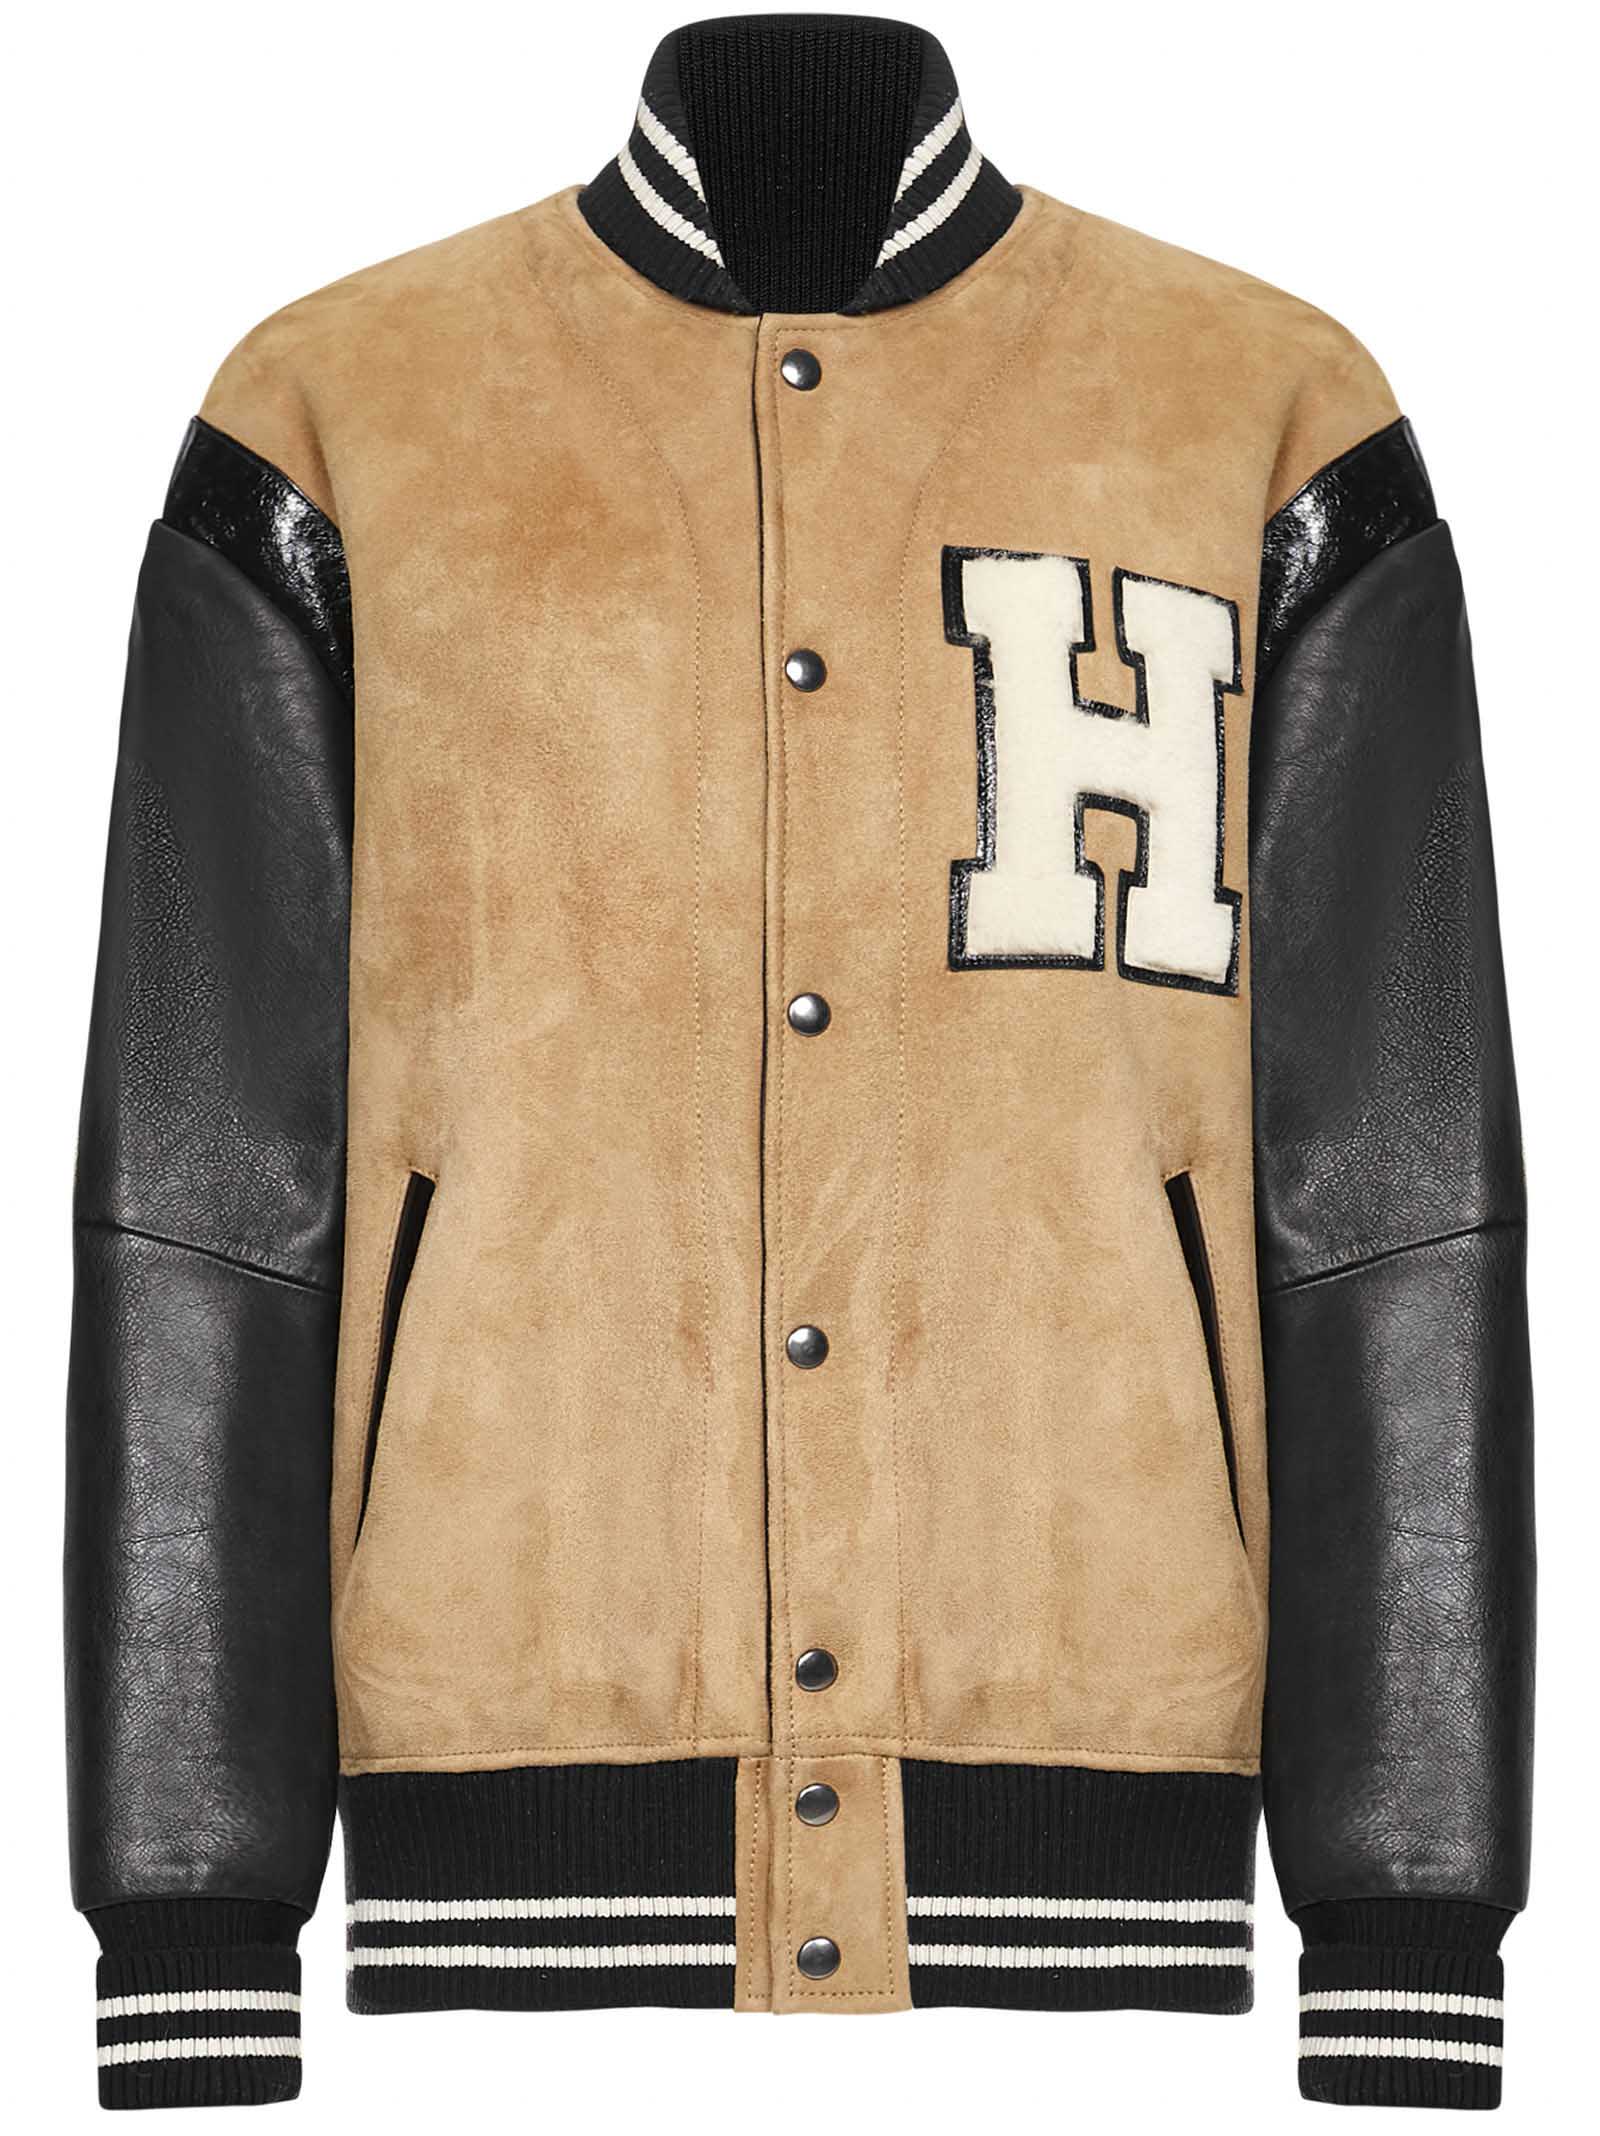 Halfboy Jacket